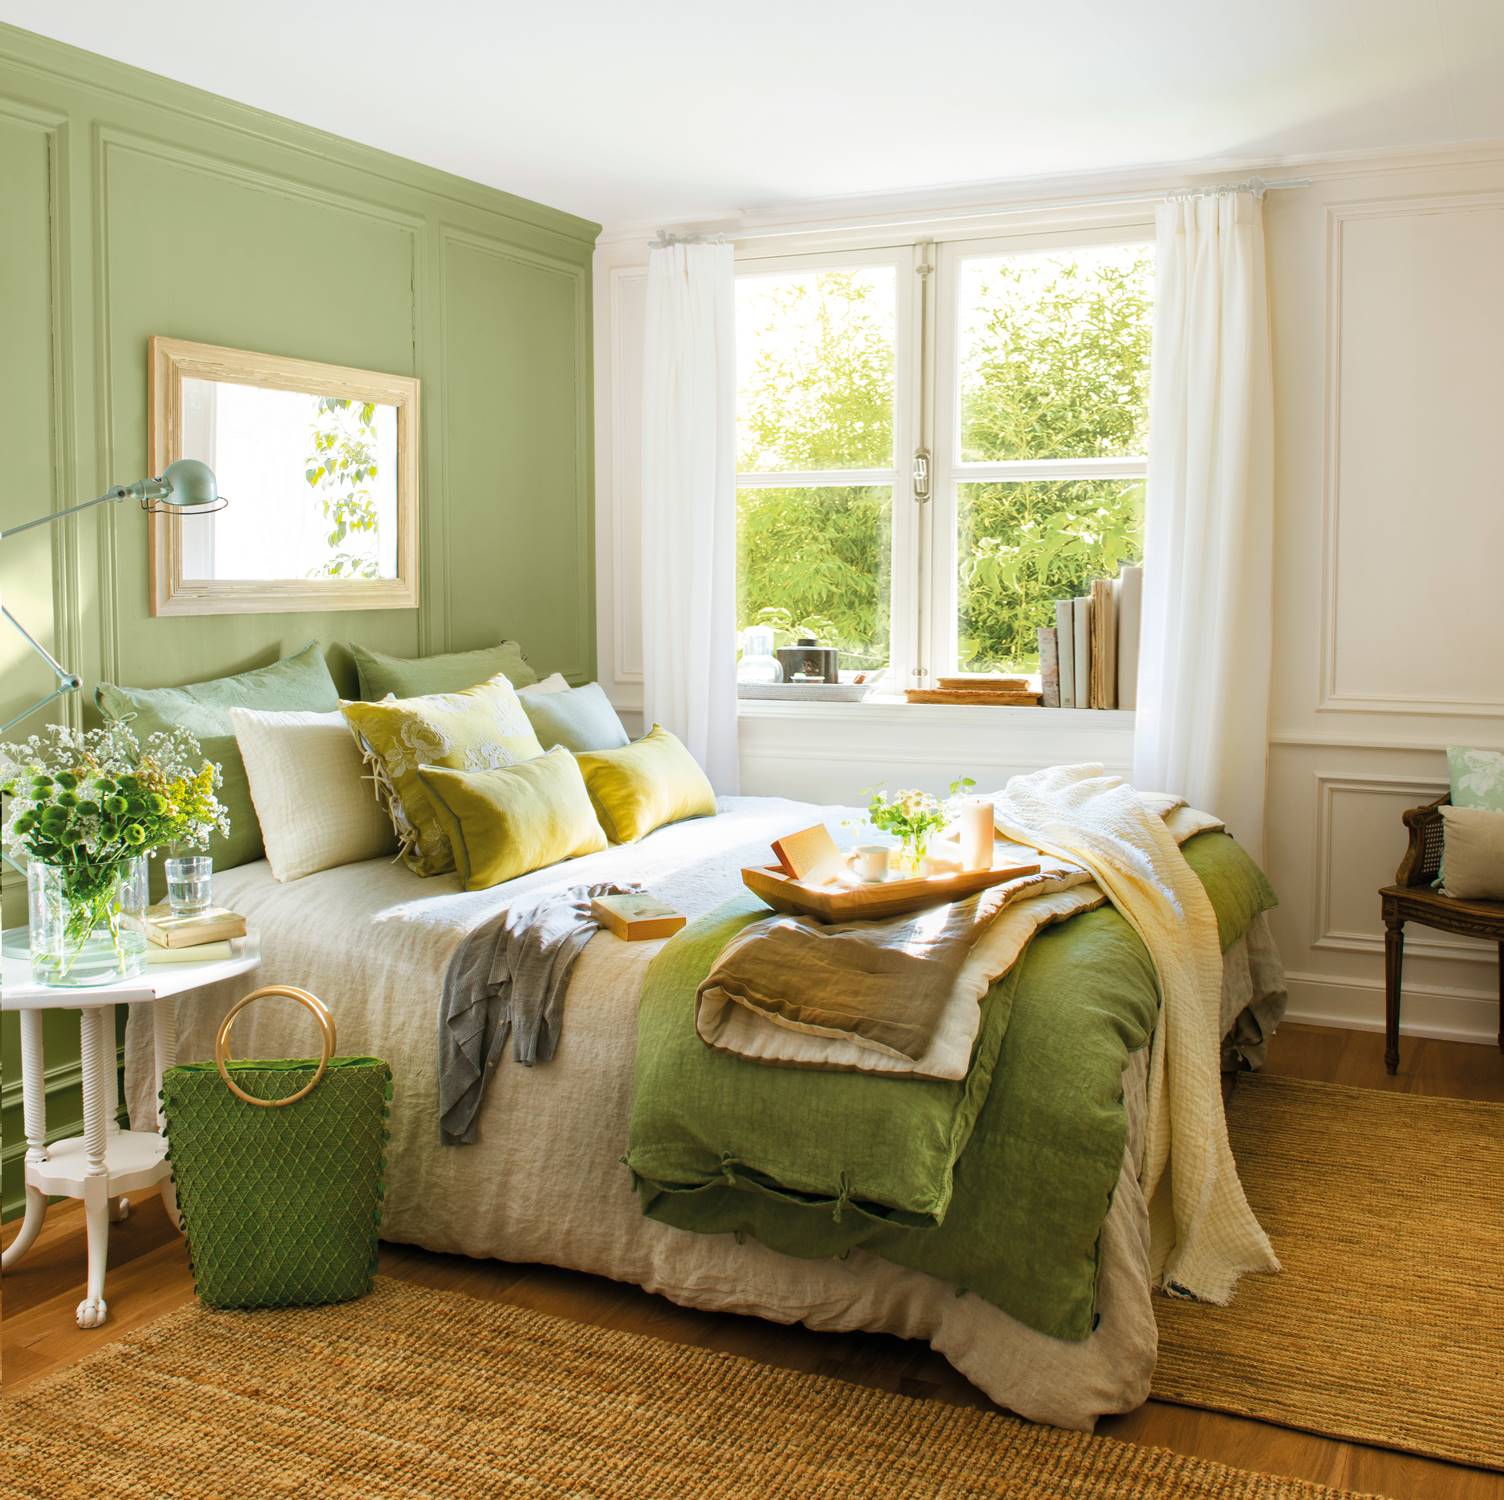 Dormitorio en color verde con paredes con cuarterones, alfombra de fibra y mantas, colchas y cojines en diferentes tonos de verde